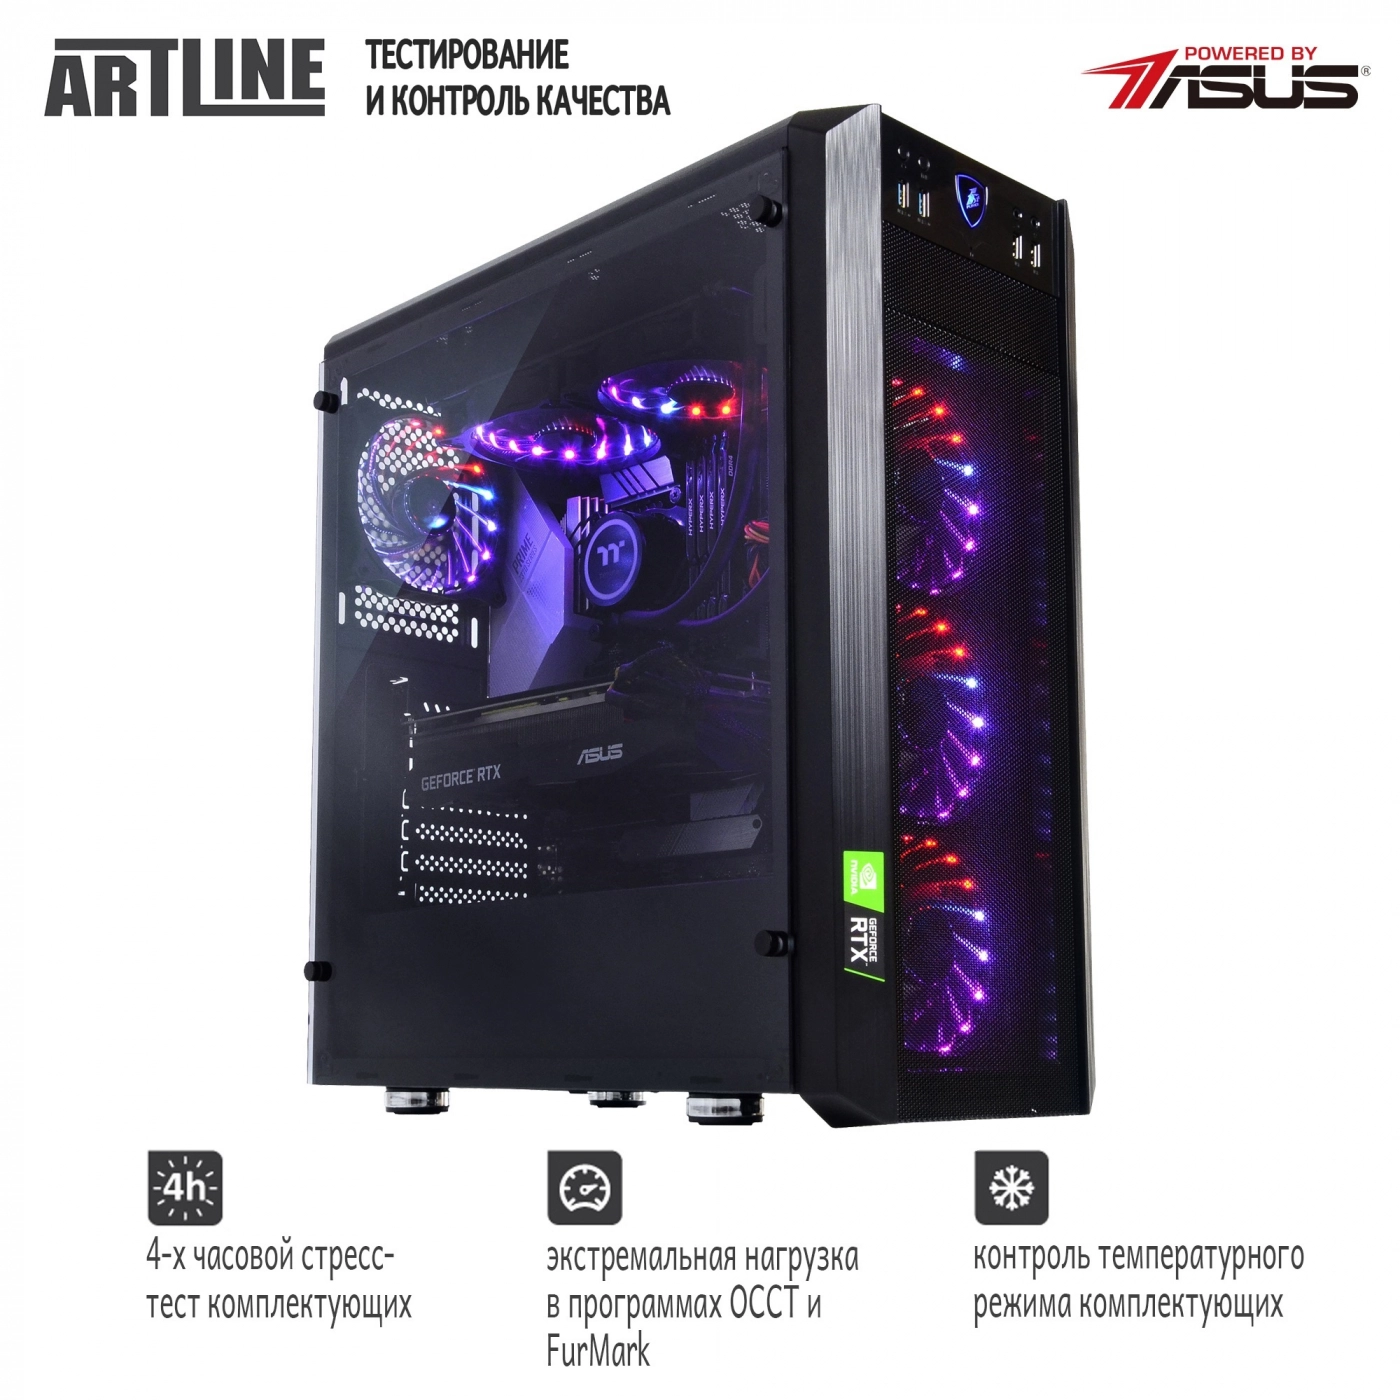 Купить Компьютер ARTLINE Gaming X93v27 - фото 7